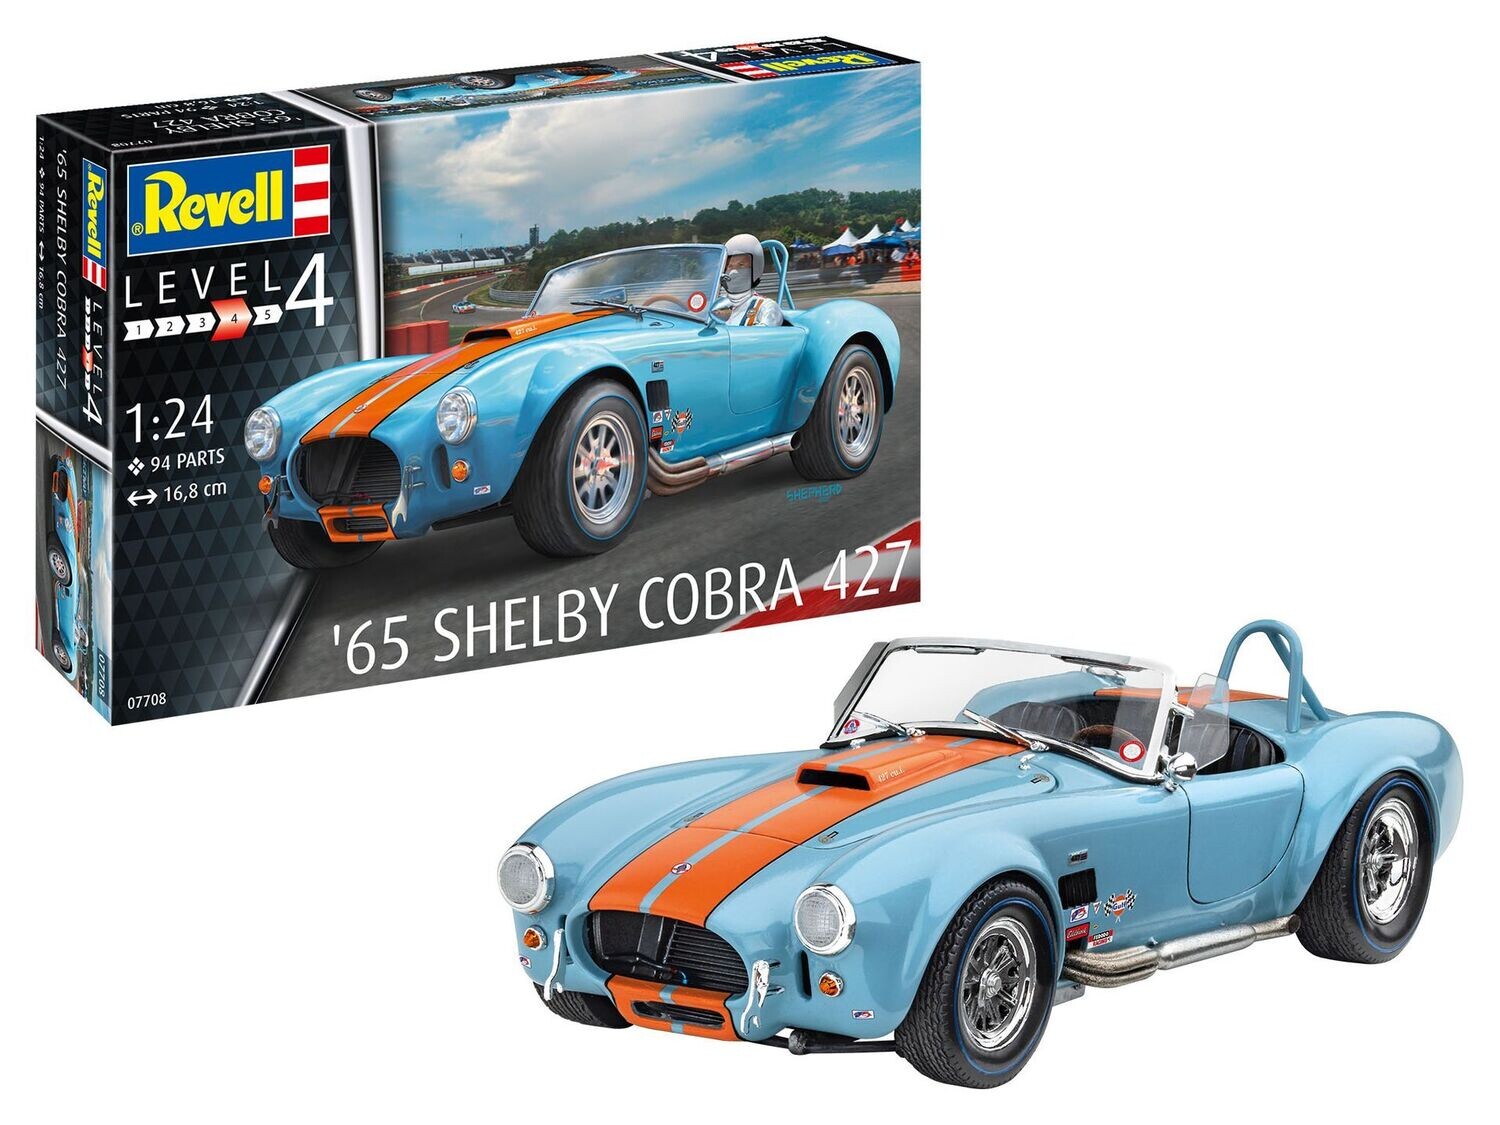 Revell 07708 65 Shelby Cobra 427 1:24 Scale Plastic Model Kit